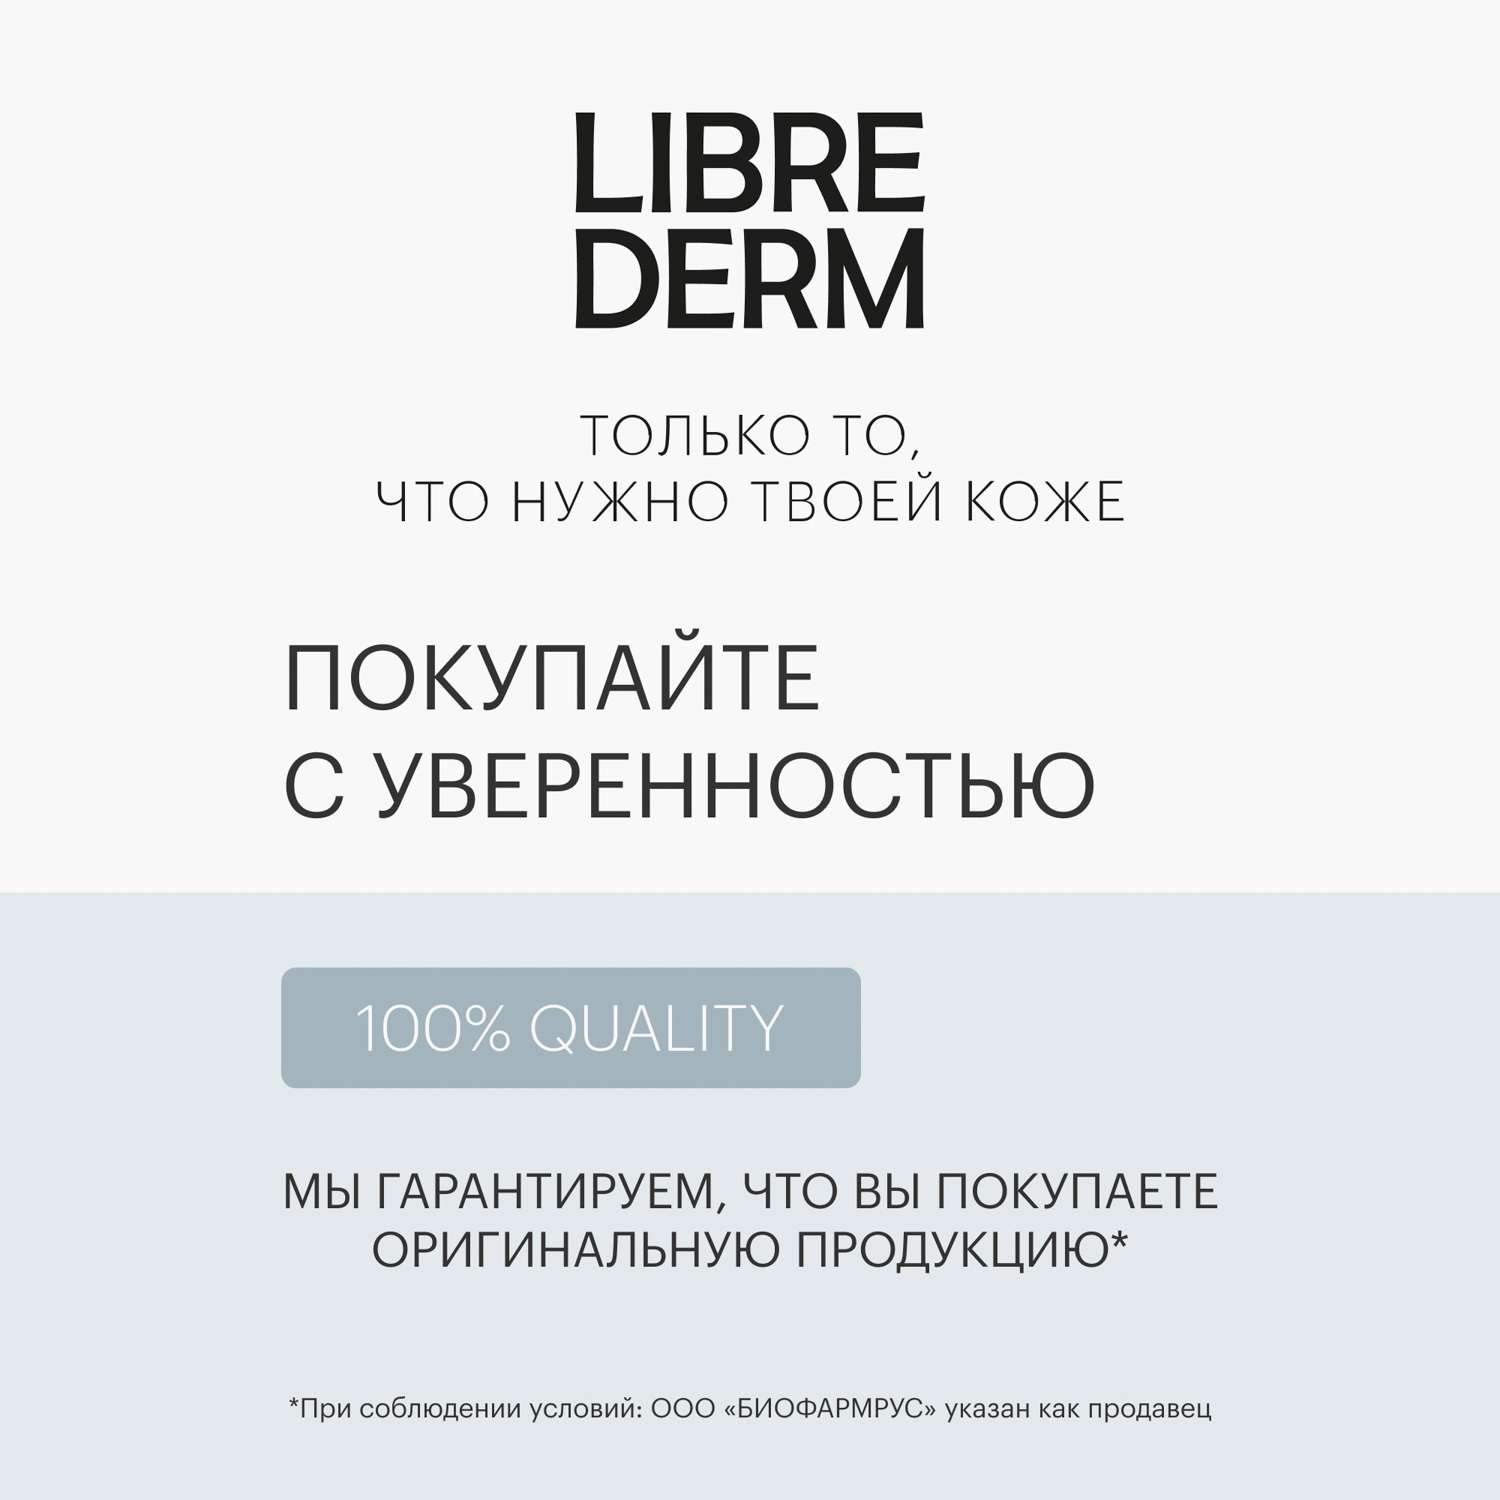 Крем 75 мл Librederm CERAFAVIT крем липидовосстанавливающий с церамидами и пребиотиком для лица и тела 0+ - фото 12